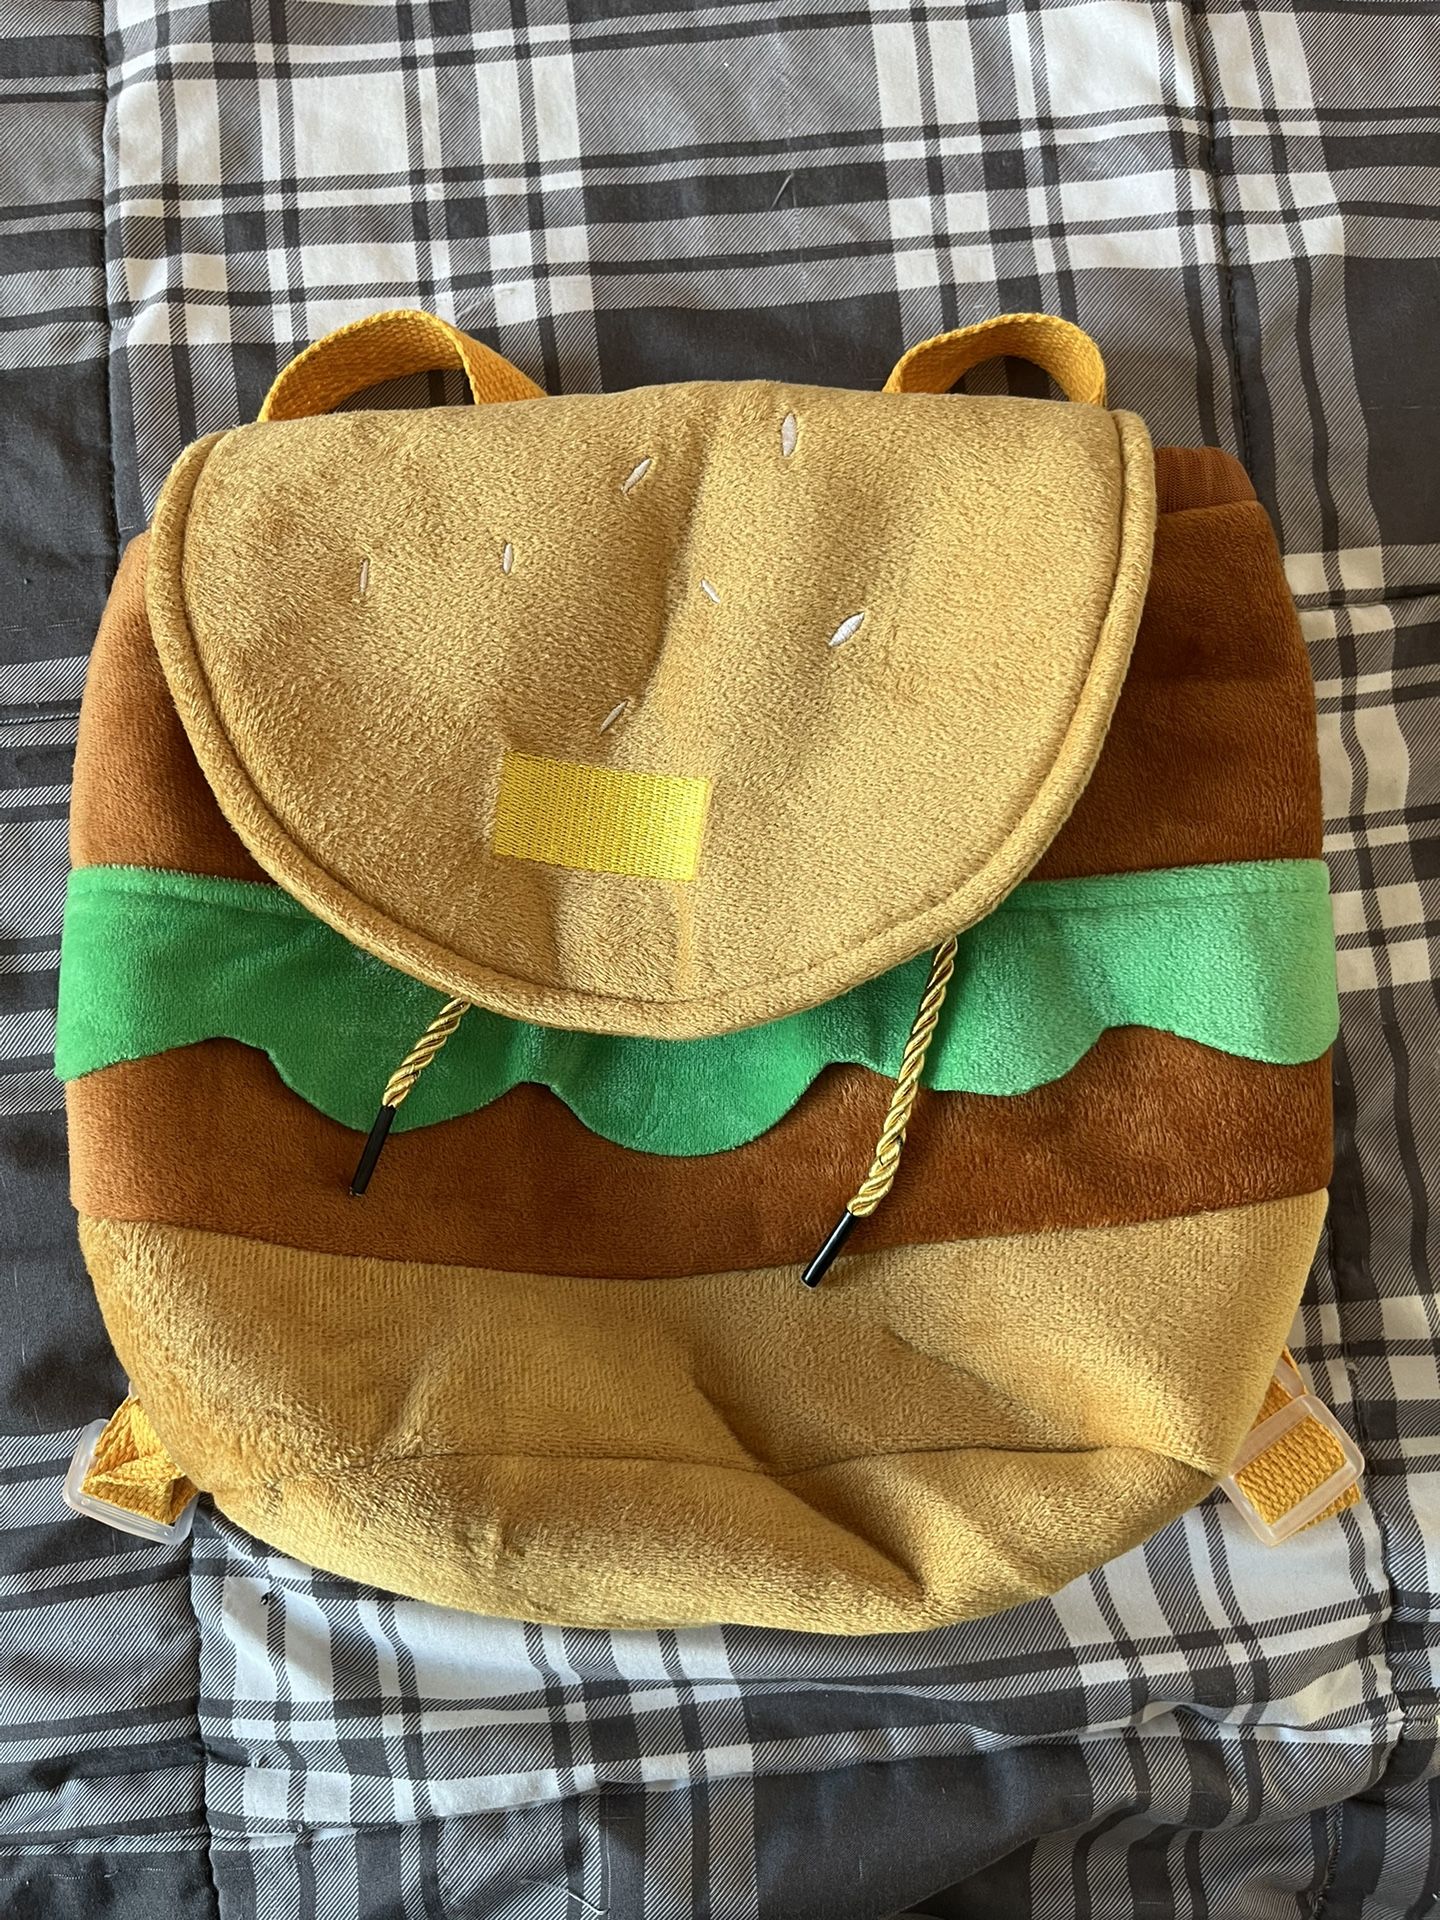 cheeseburger bag